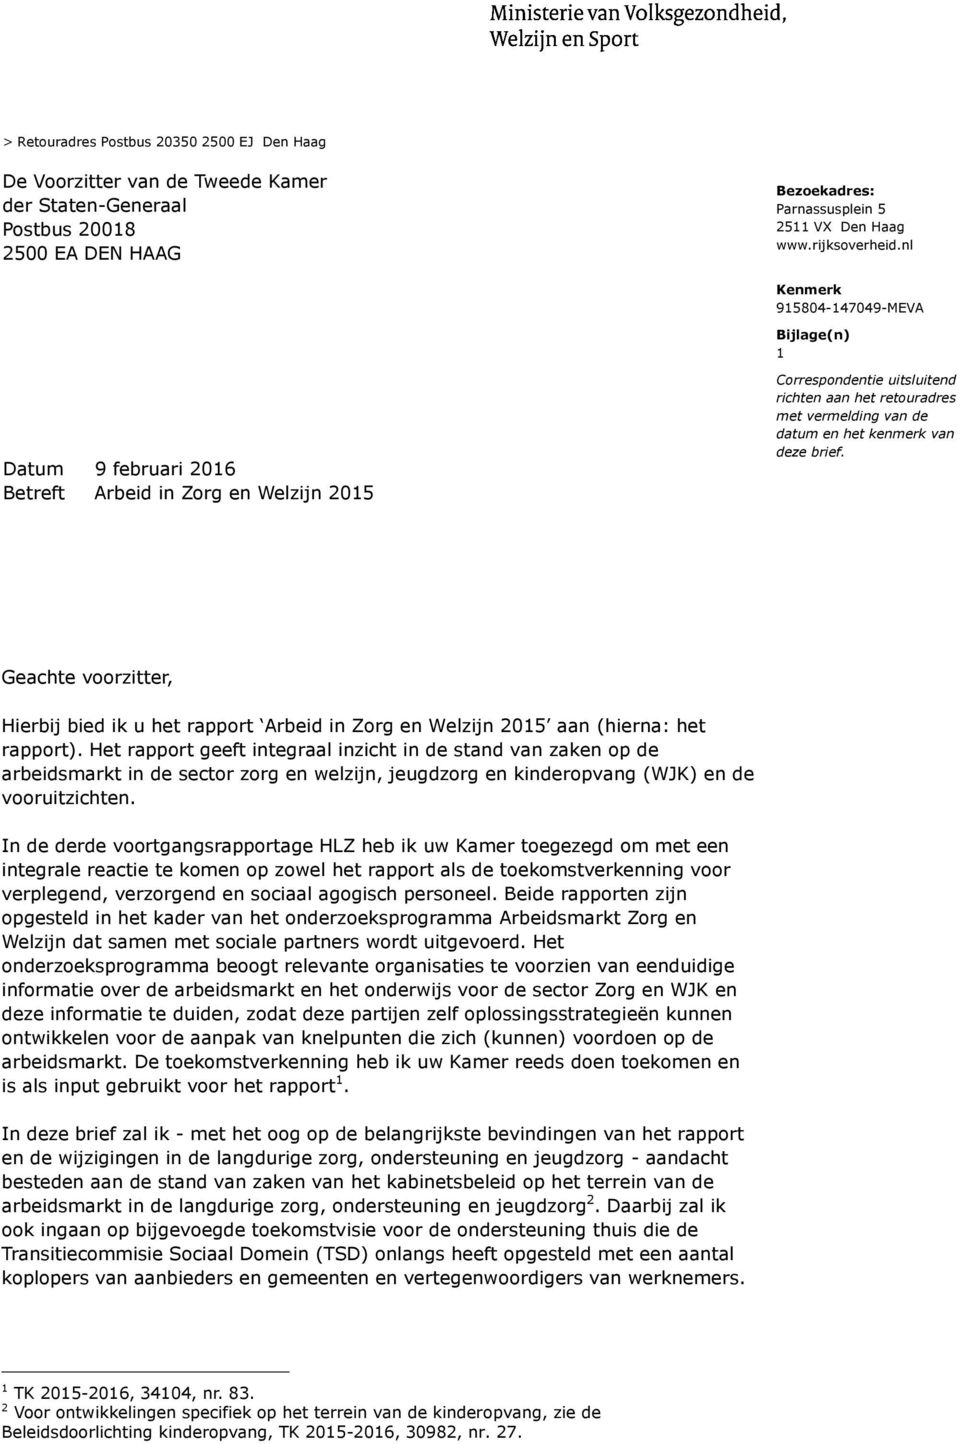 kenmerk van deze brief. Geachte voorzitter, Hierbij bied ik u het rapport Arbeid in Zorg en Welzijn 2015 aan (hierna: het rapport).